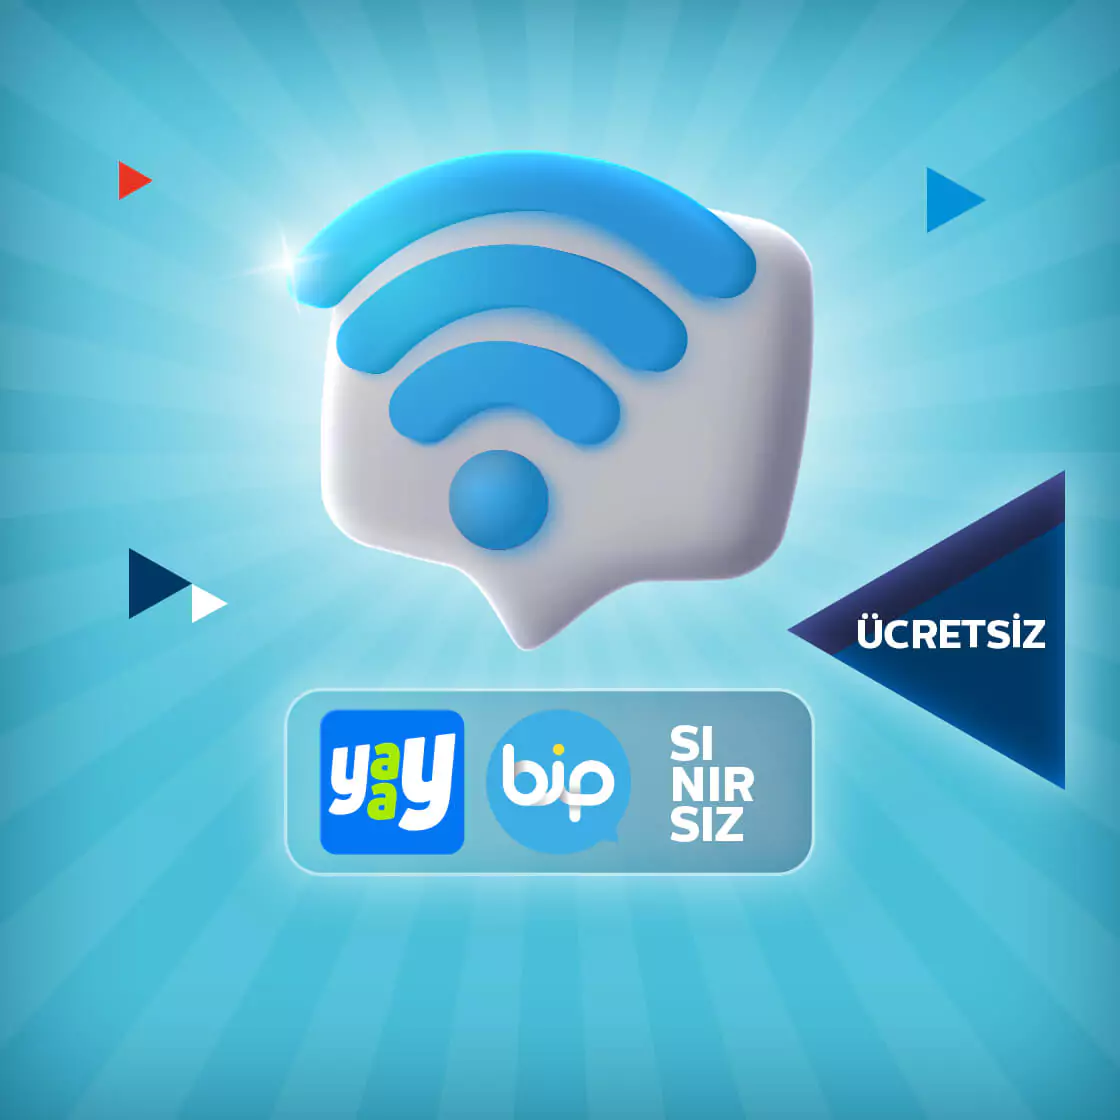 wifi sembolü altında yaay bip sembolü ücretsiz ve sınırsız yazısı